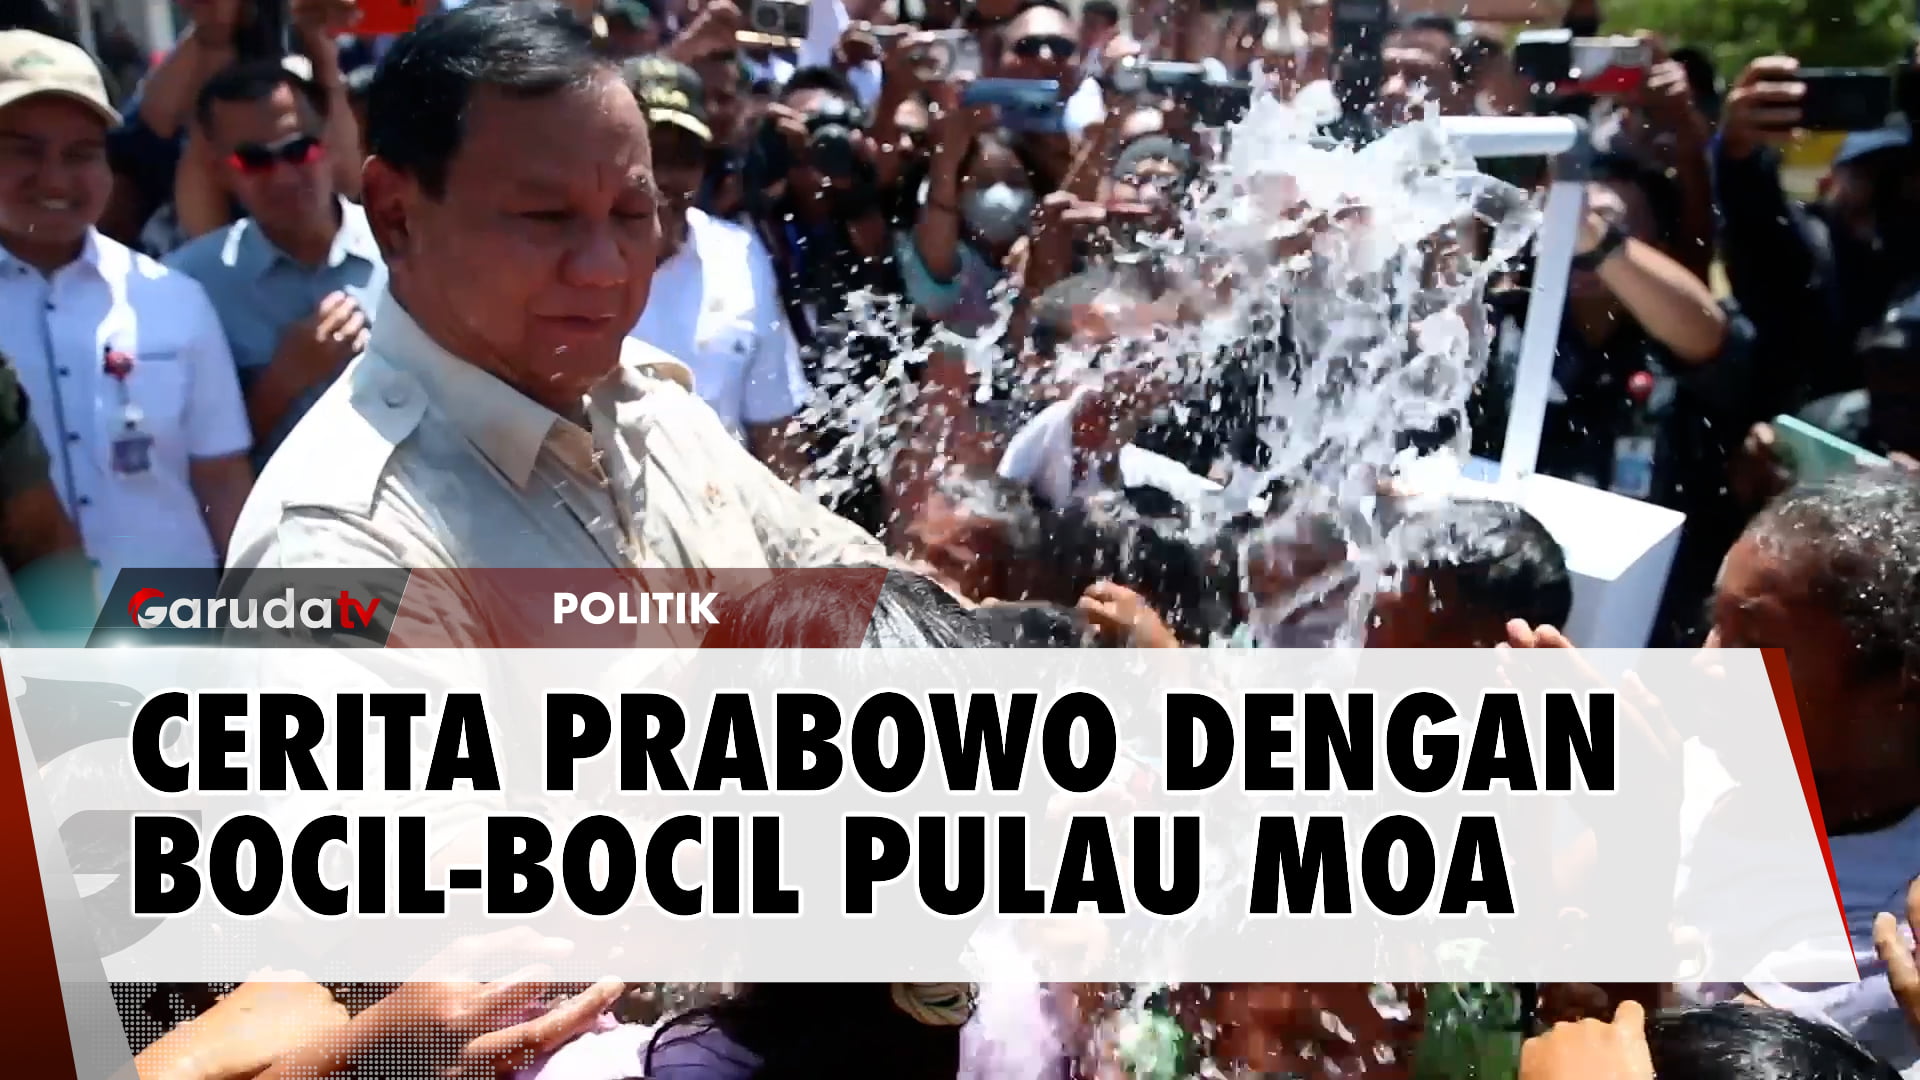 Menhan Prabowo Ungkap Kesan Bercengkrama dengan Anak-Anak Moa